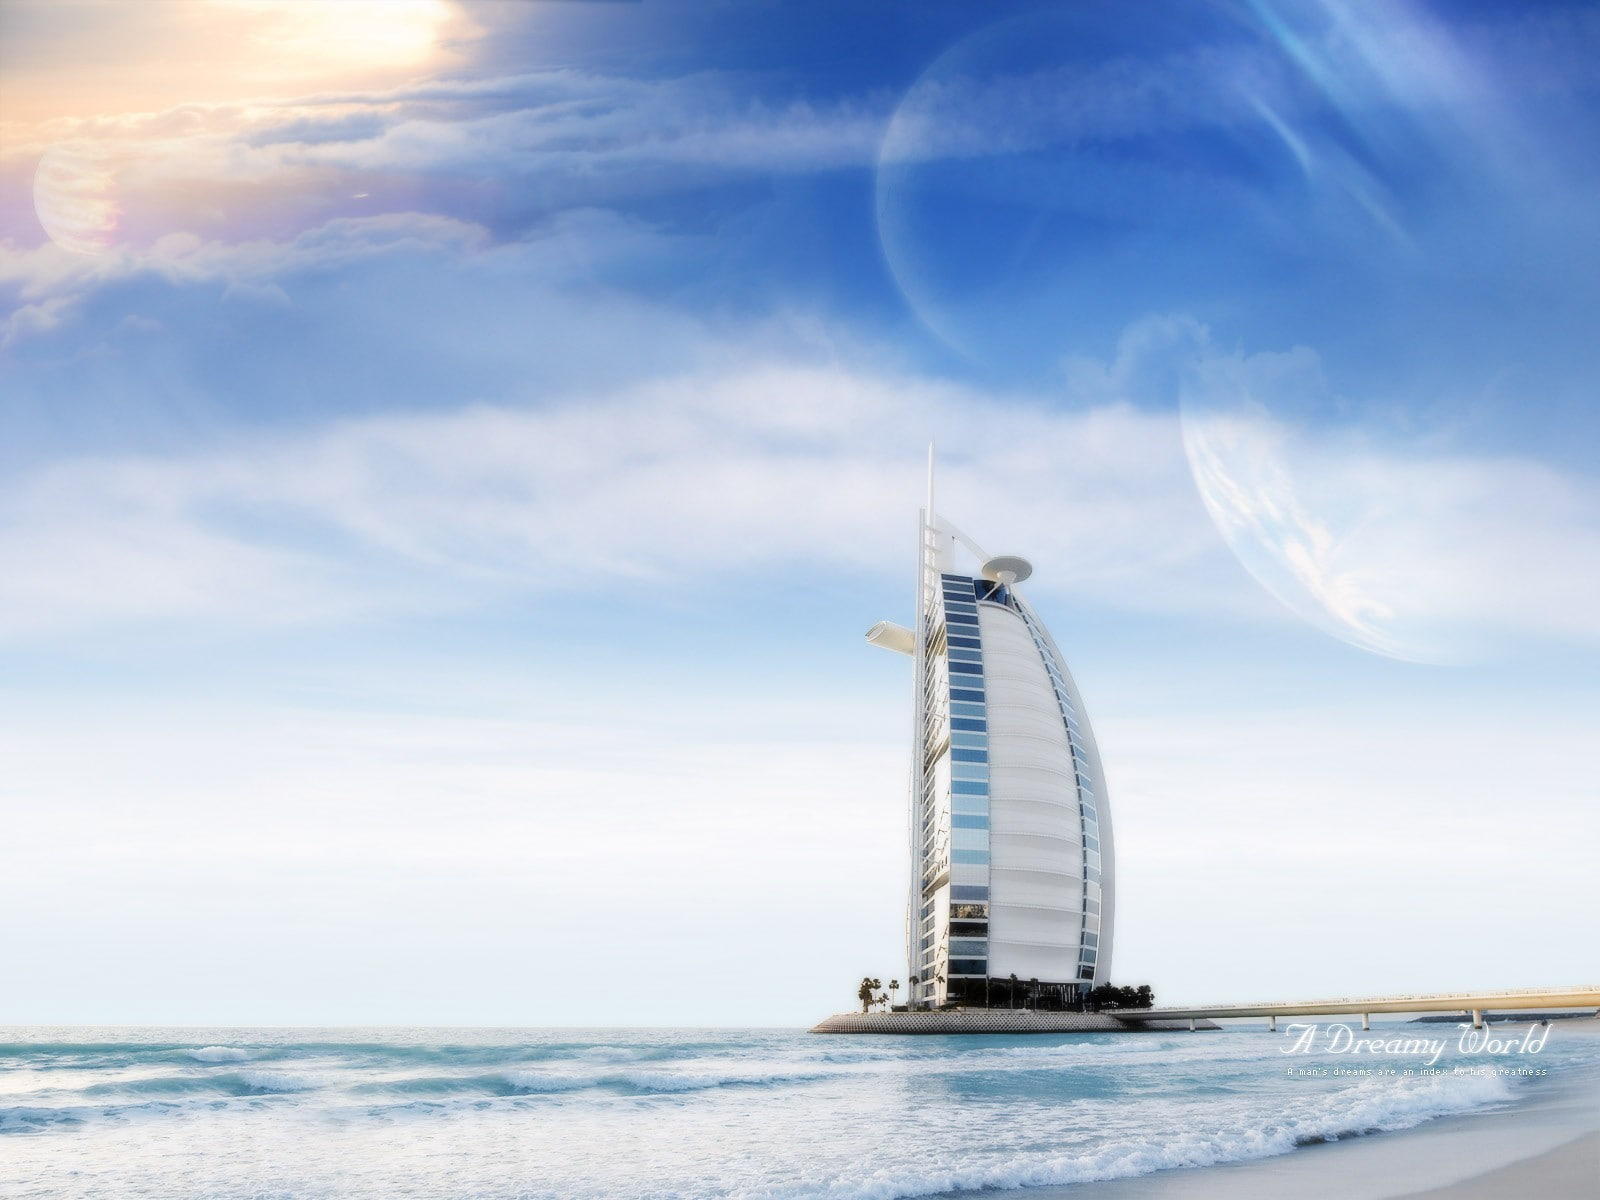 grey and blue building, sea, clouds, Dreamy World, Burj al Arab